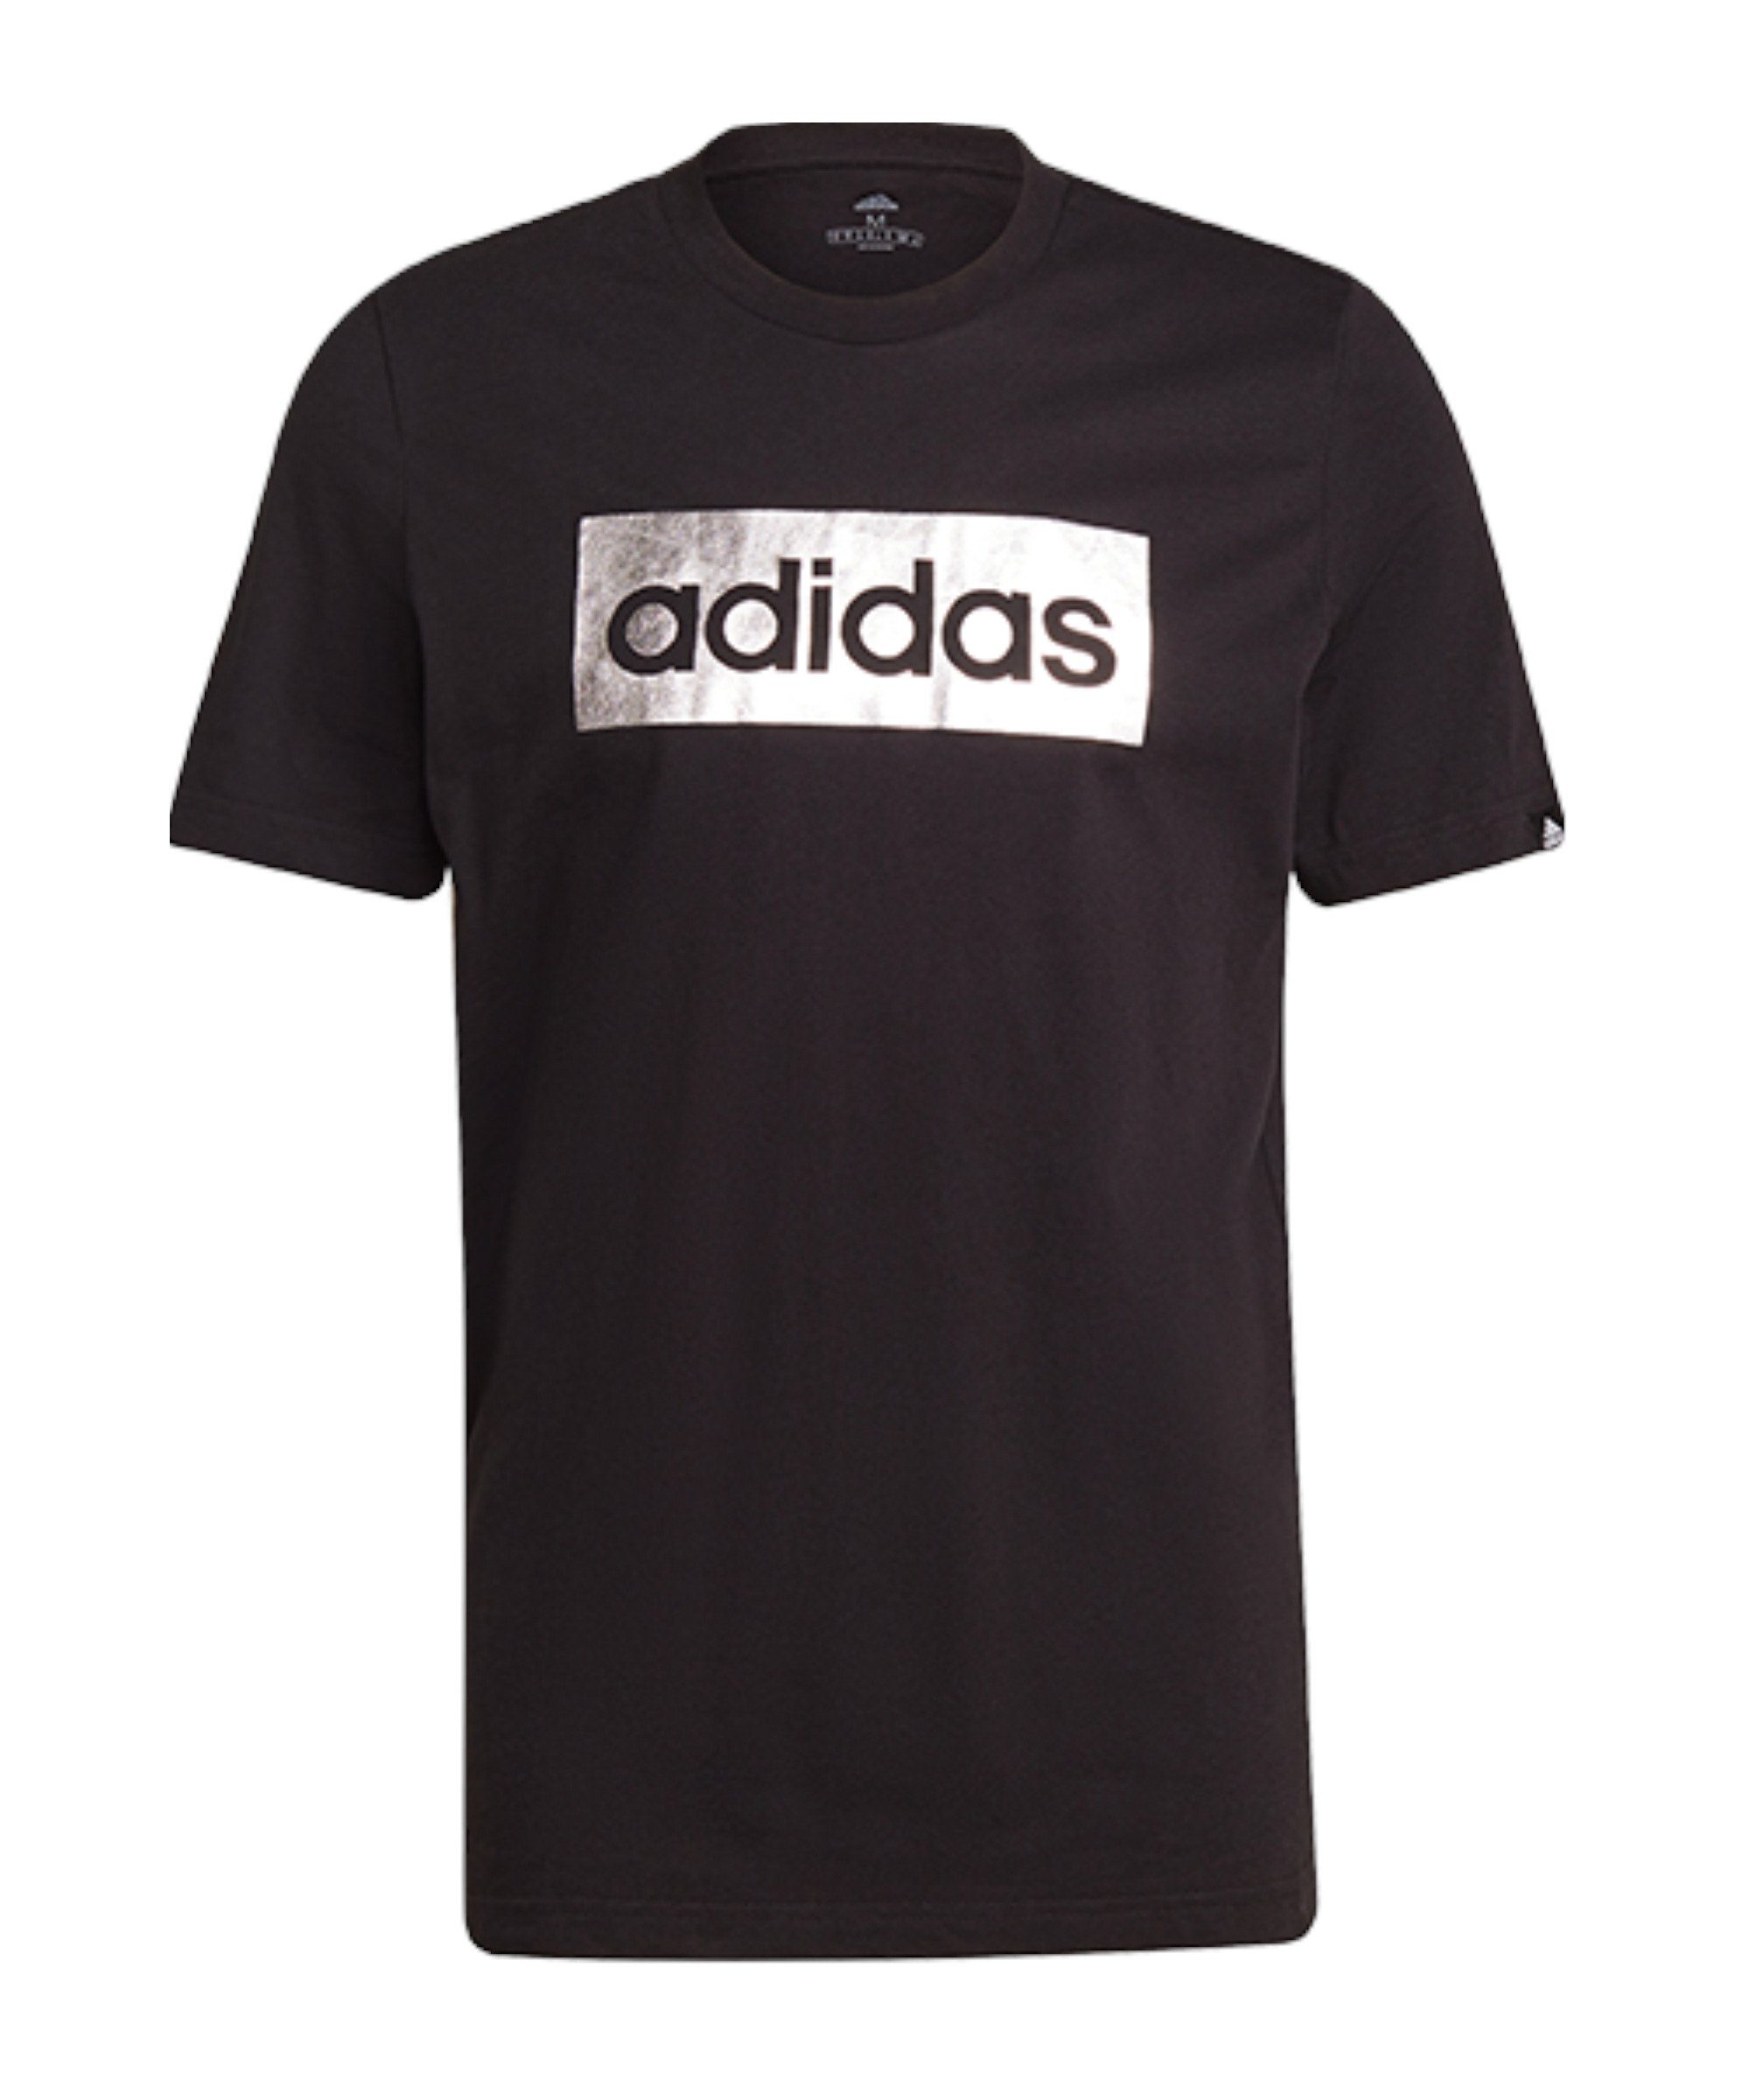 adidas Performance T-Shirt Foil Box T-Shirt default schwarzsilber